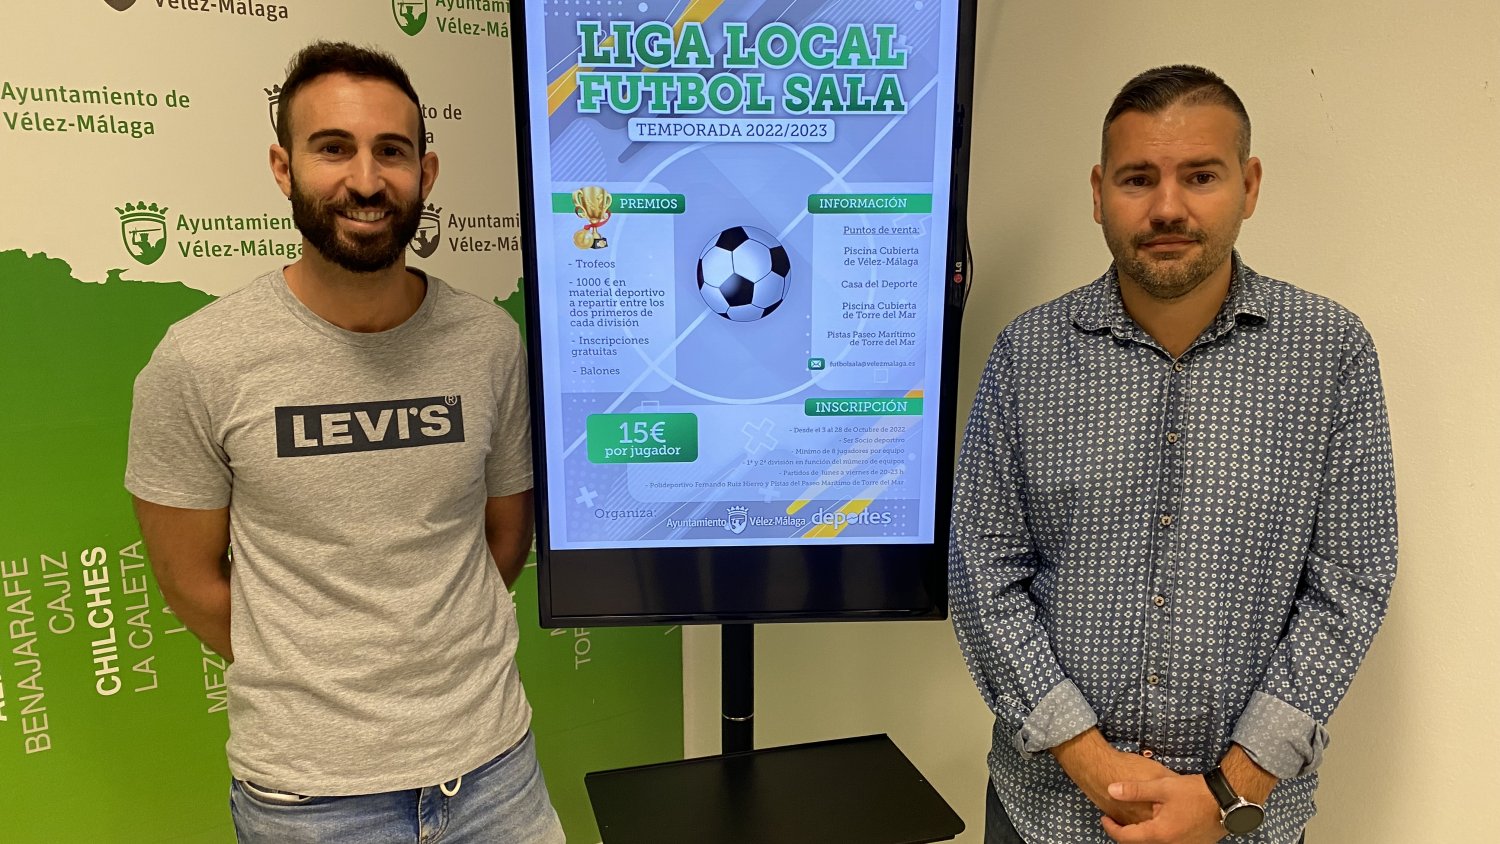 Vélez-Málaga presenta la 'Liga Local de Fútbol Sala de la temporada 2022-2023'